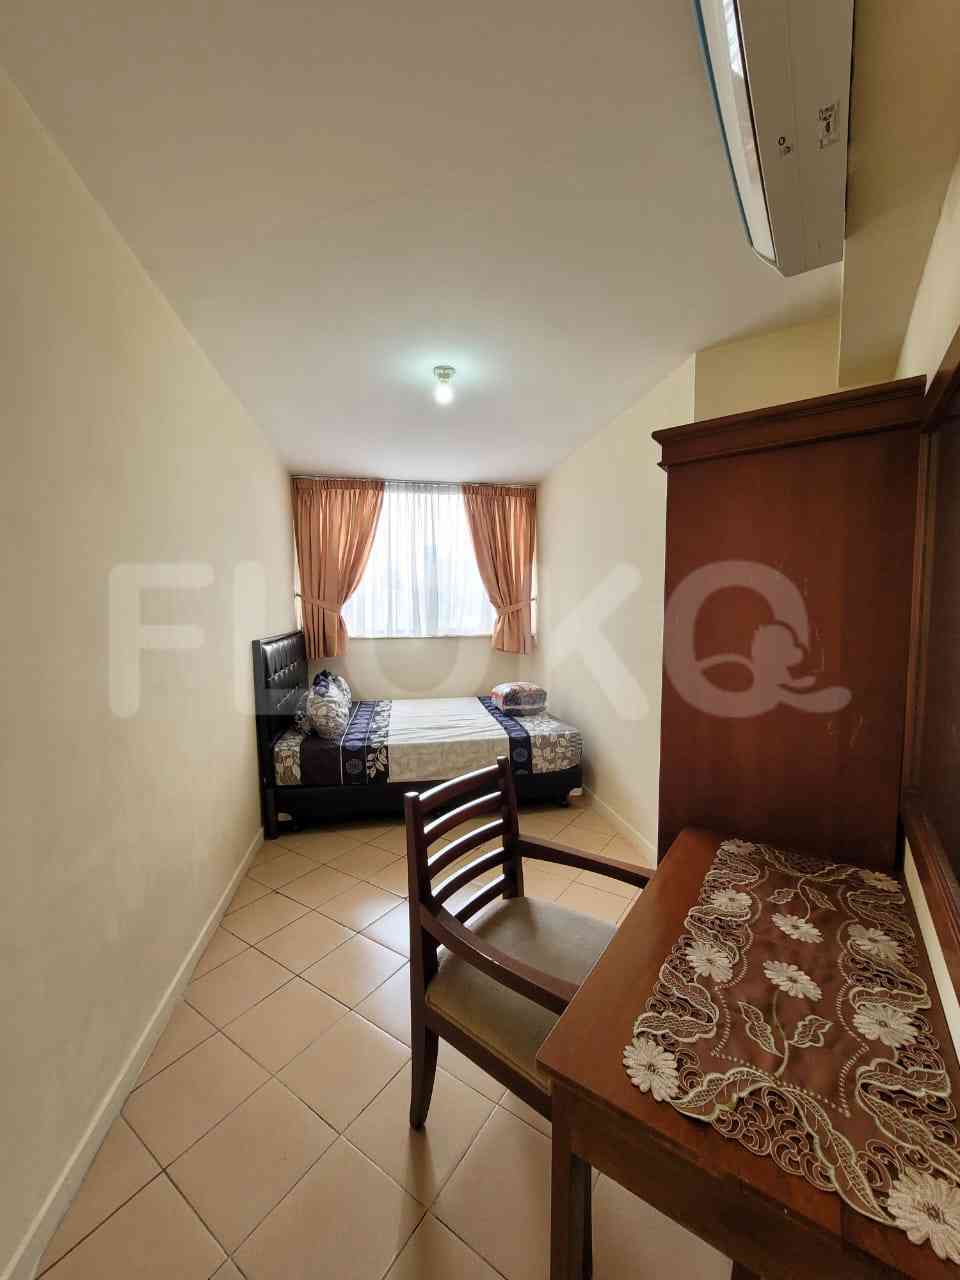 2 Bedroom on 23rd Floor for Rent in Taman Rasuna Apartment - fku9de 8